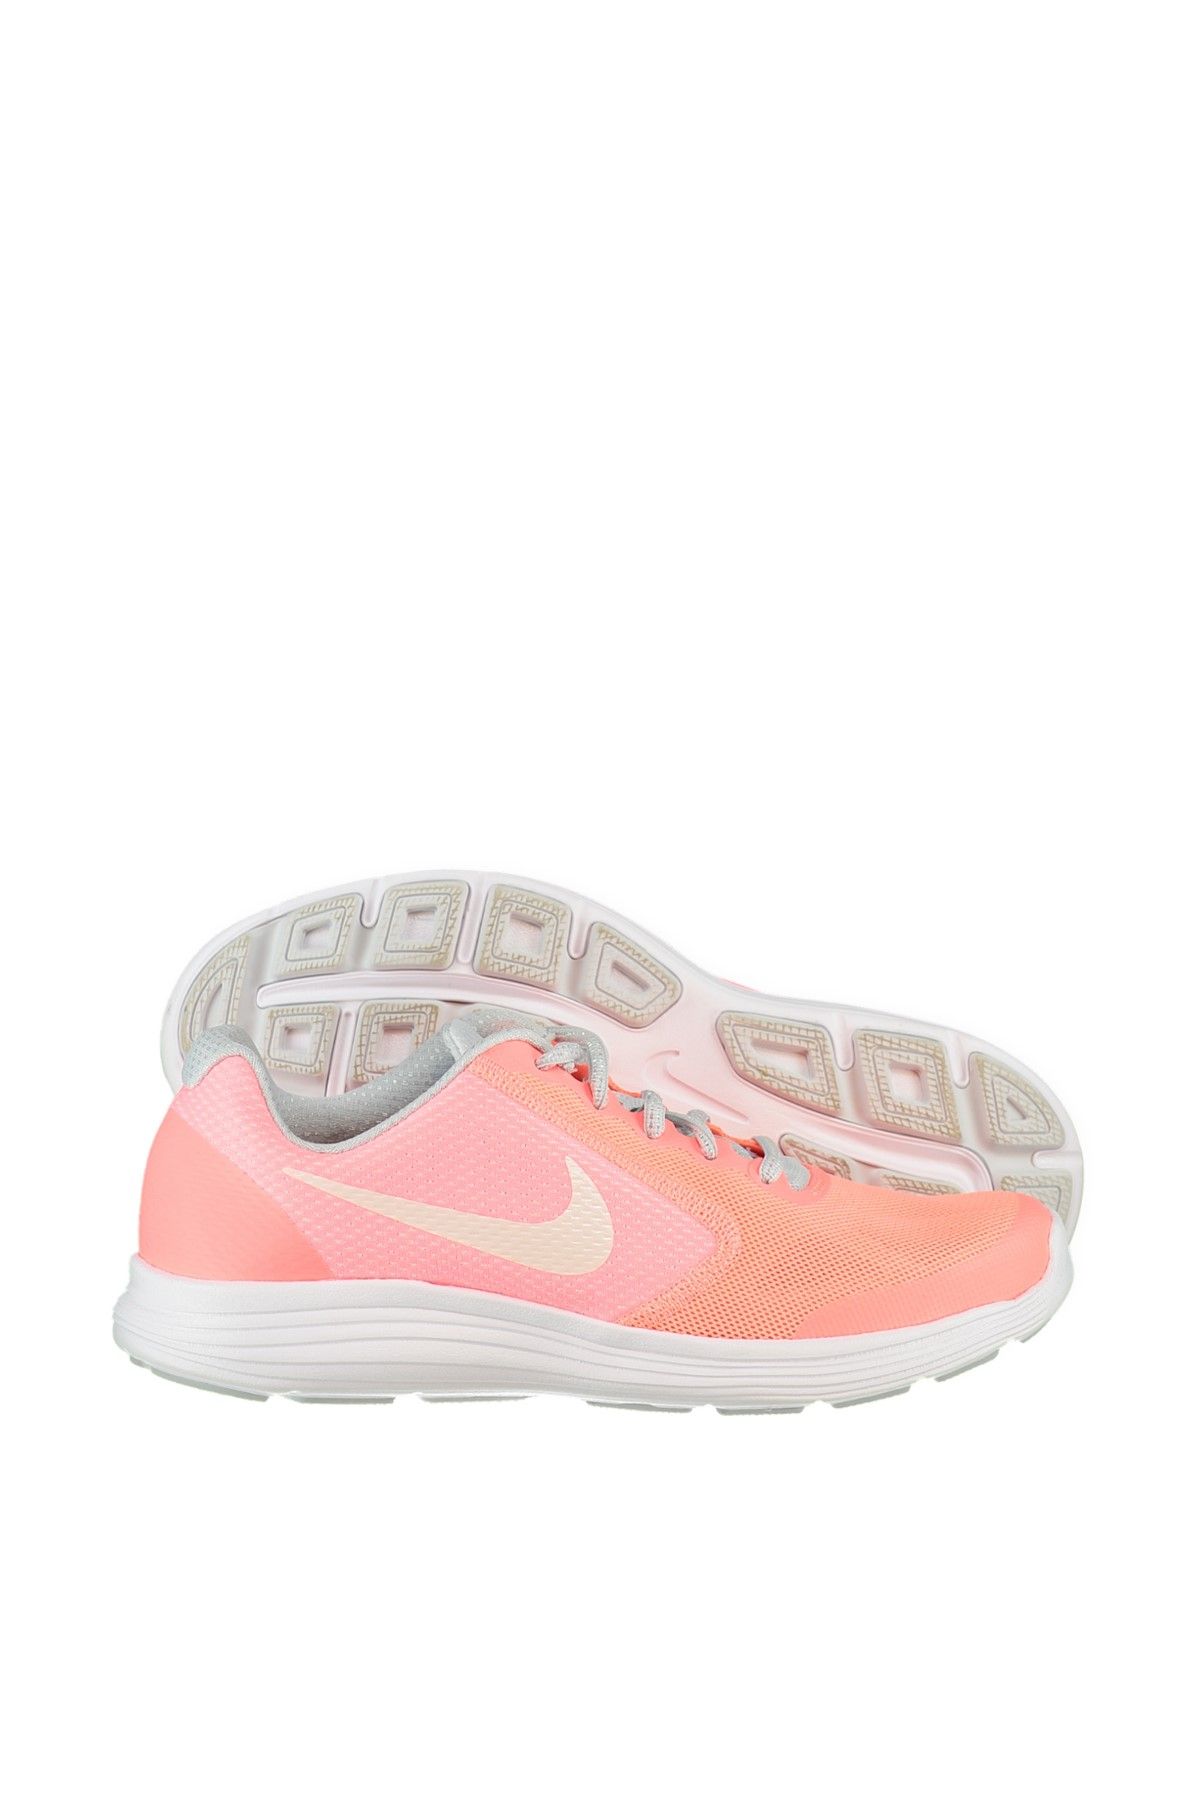 Nike Kadın Koşu Ayakkabı - Revolution 3 Se (Gs) - 859602-600